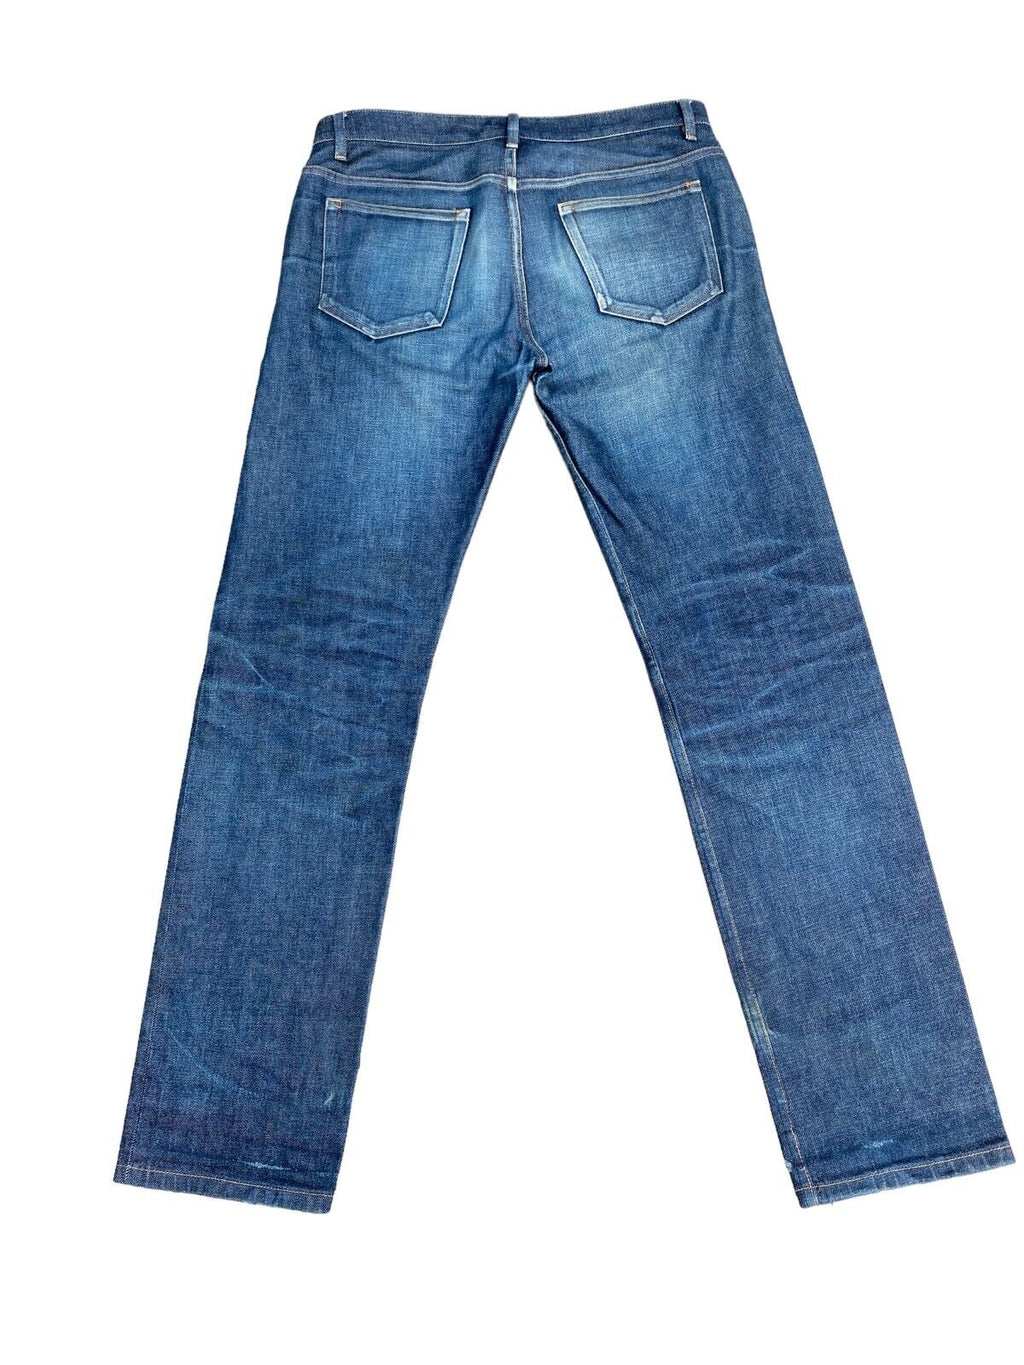 Blue denim Jeans  New Standard